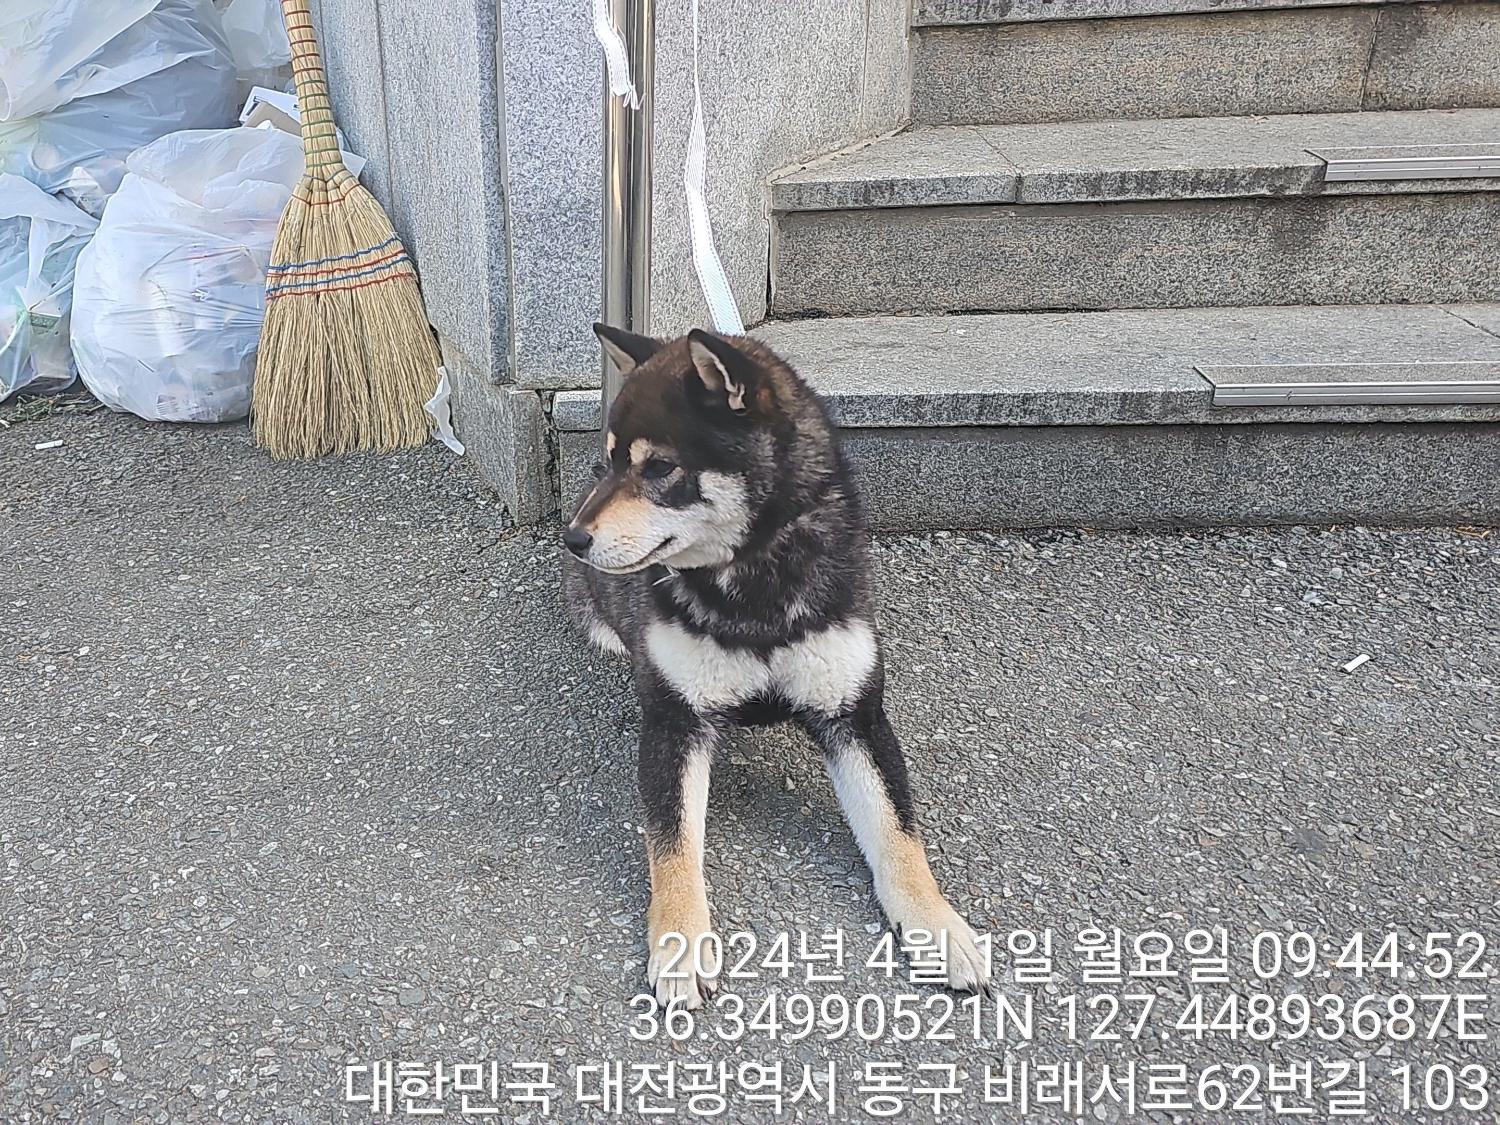 공고 번호가 대전-동구-2024-00079인 시바 동물 사진